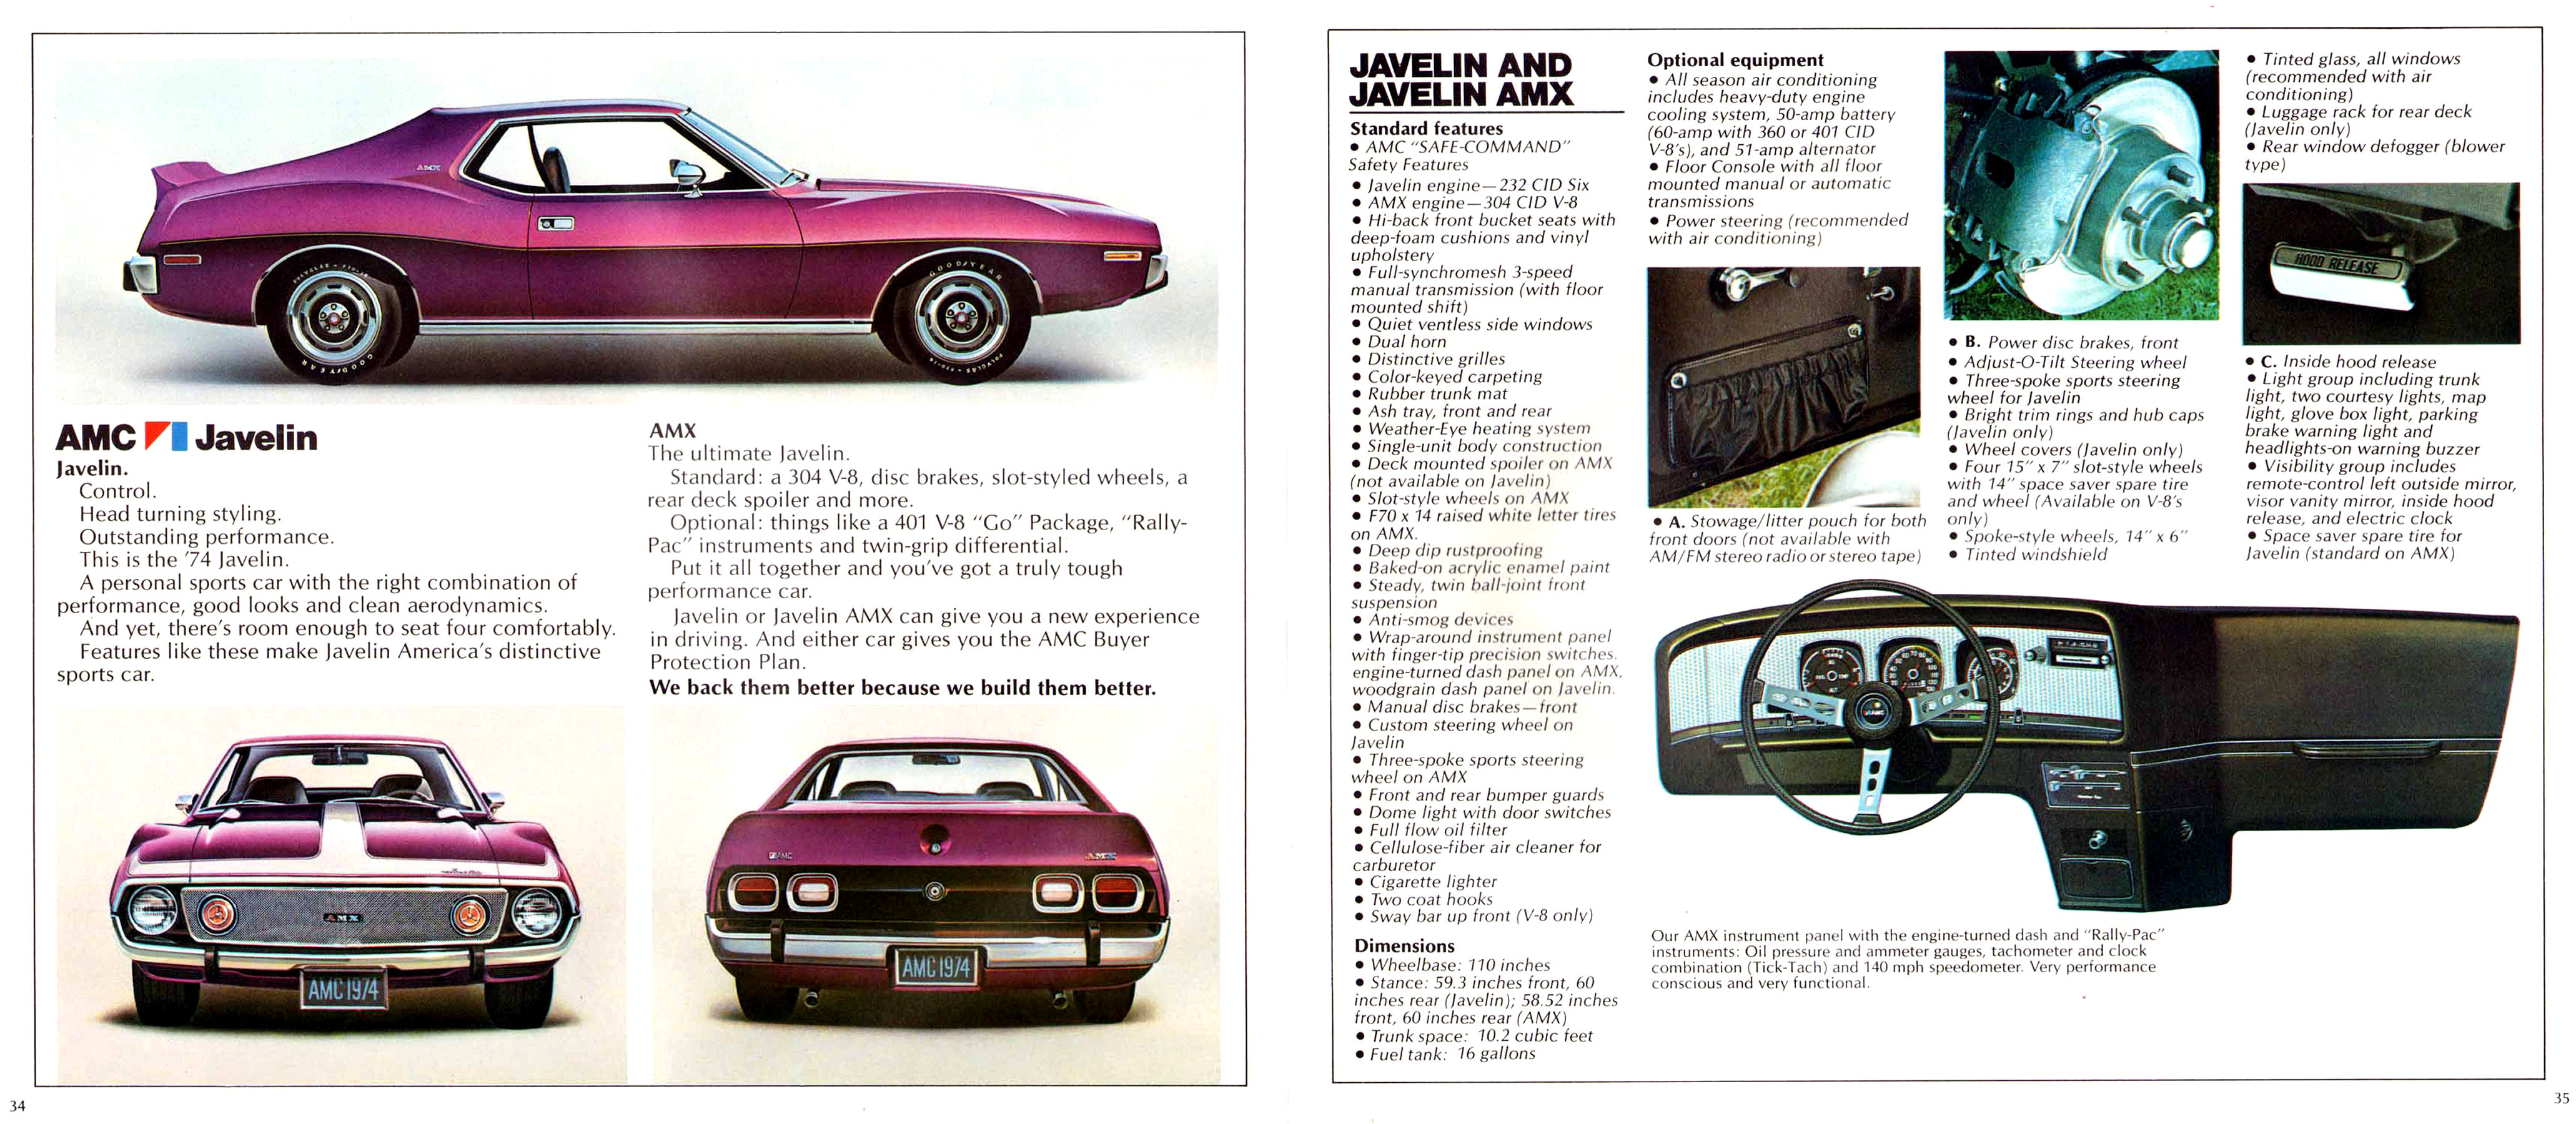 1974 AMC Full Line Prestige-34-35